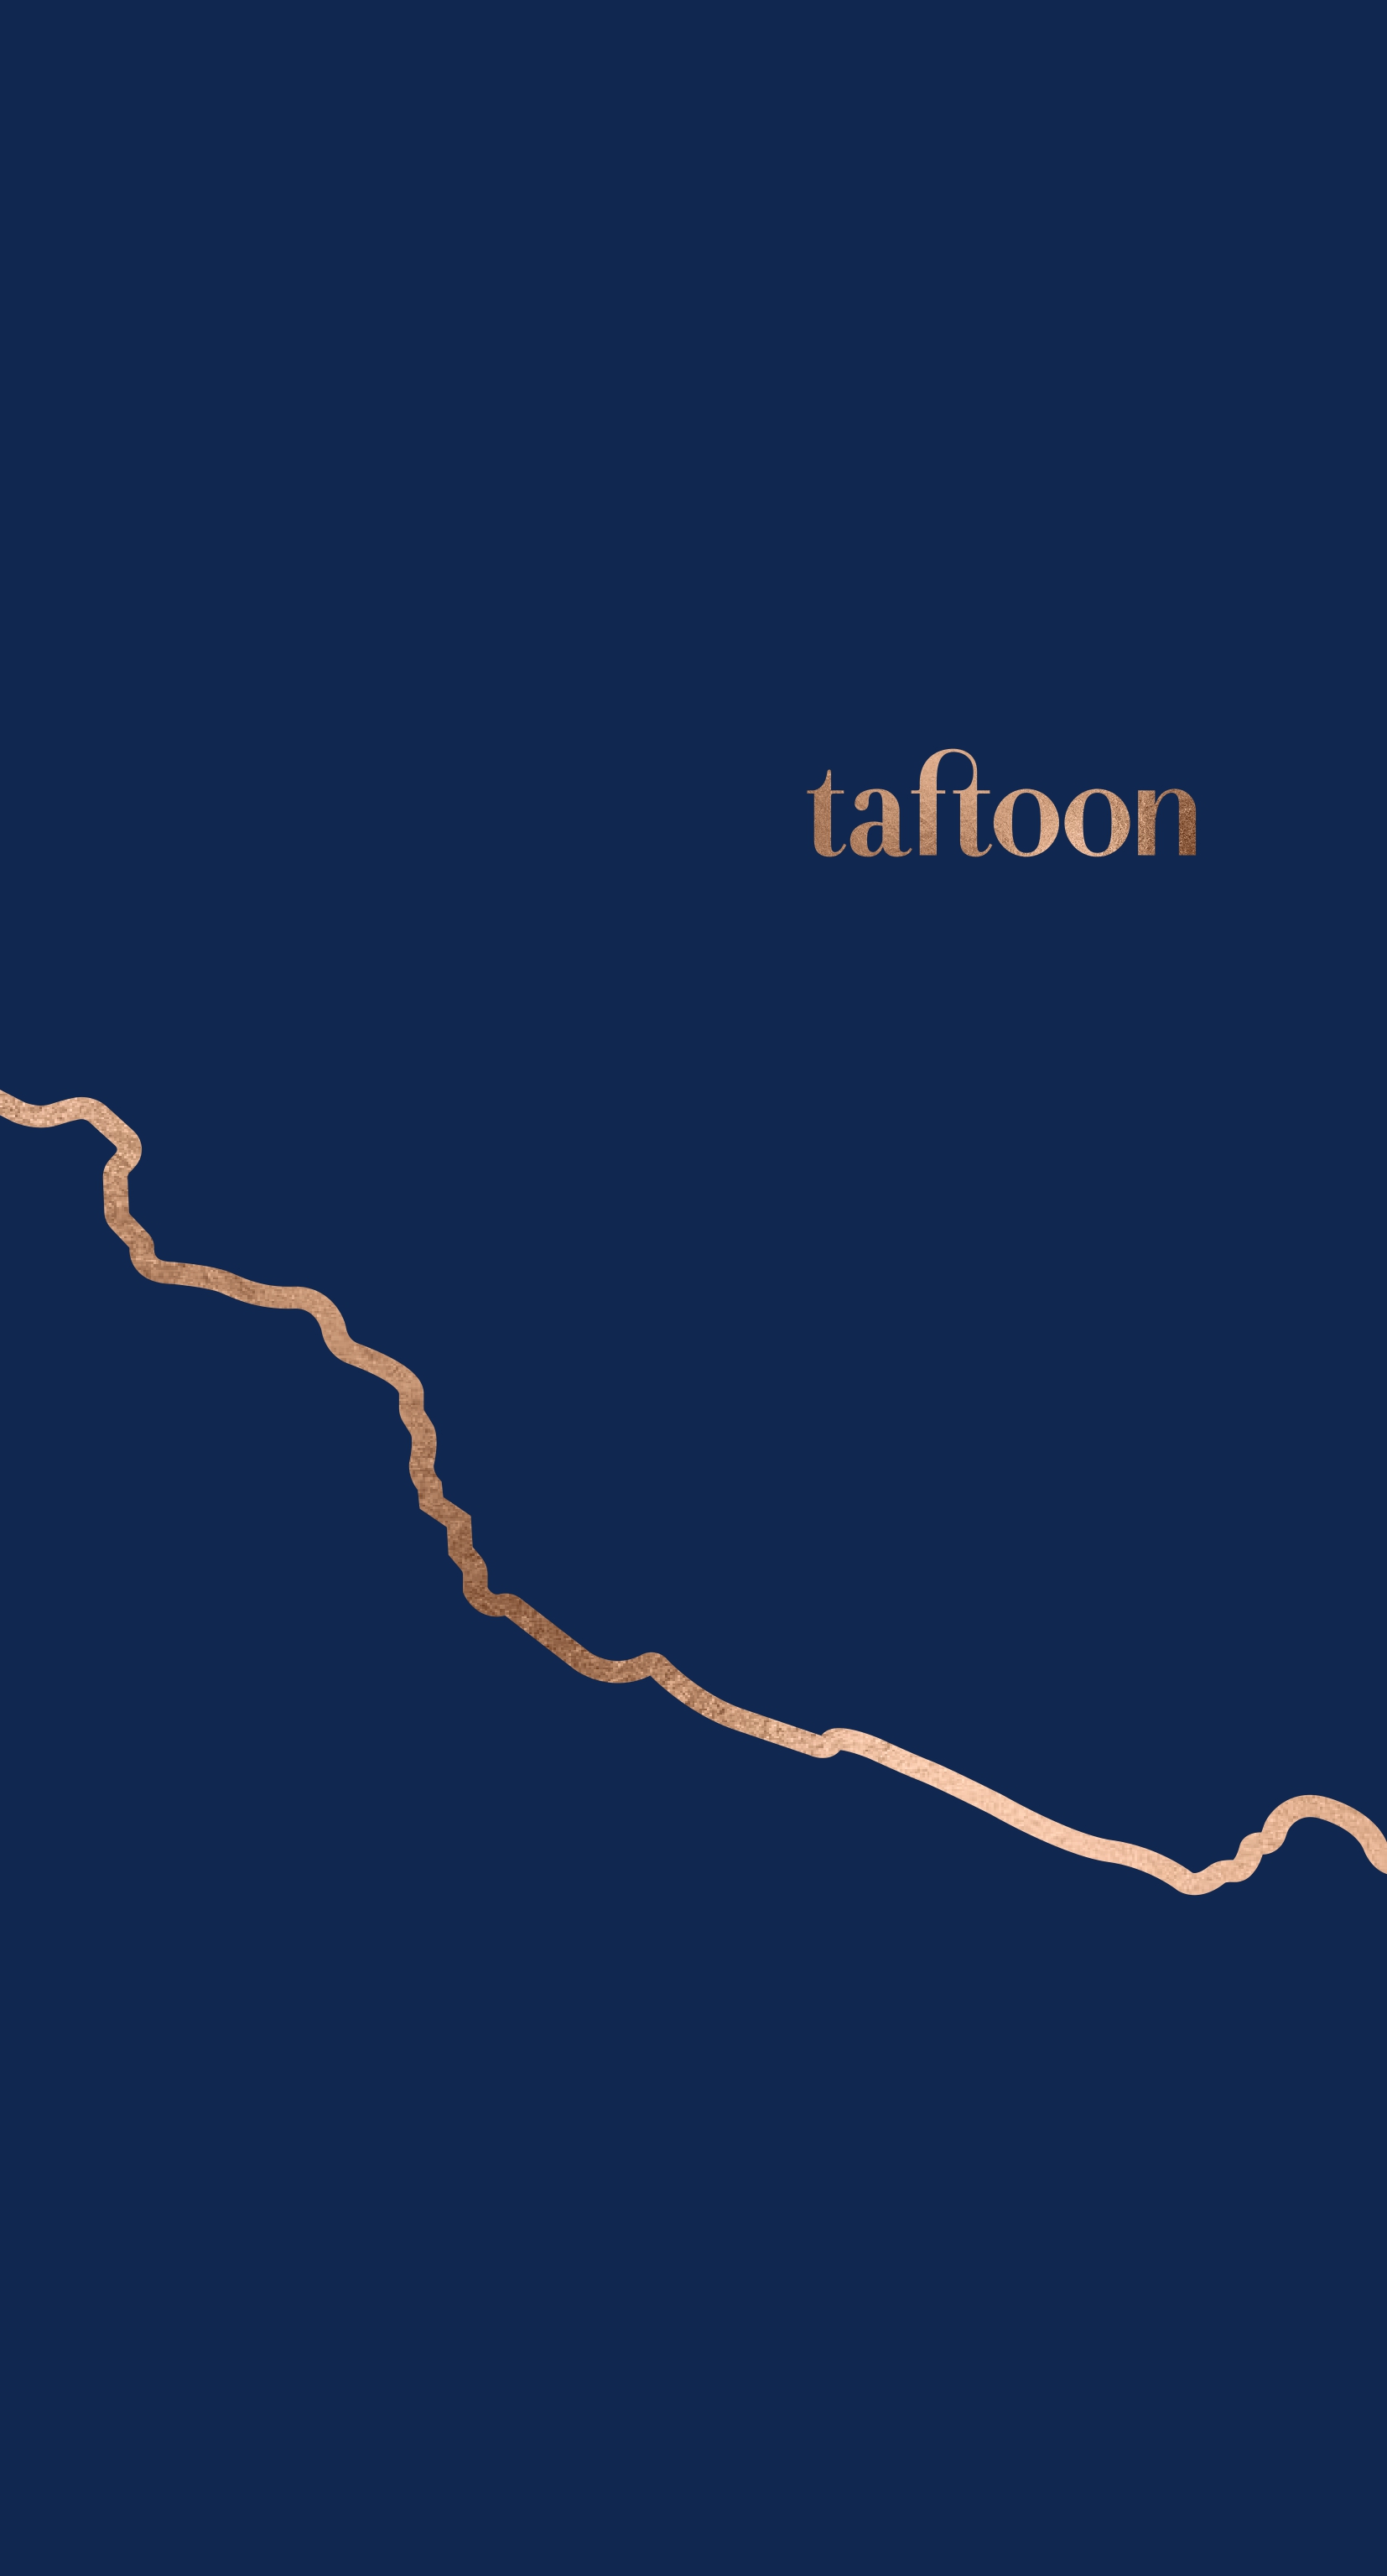 taftoon